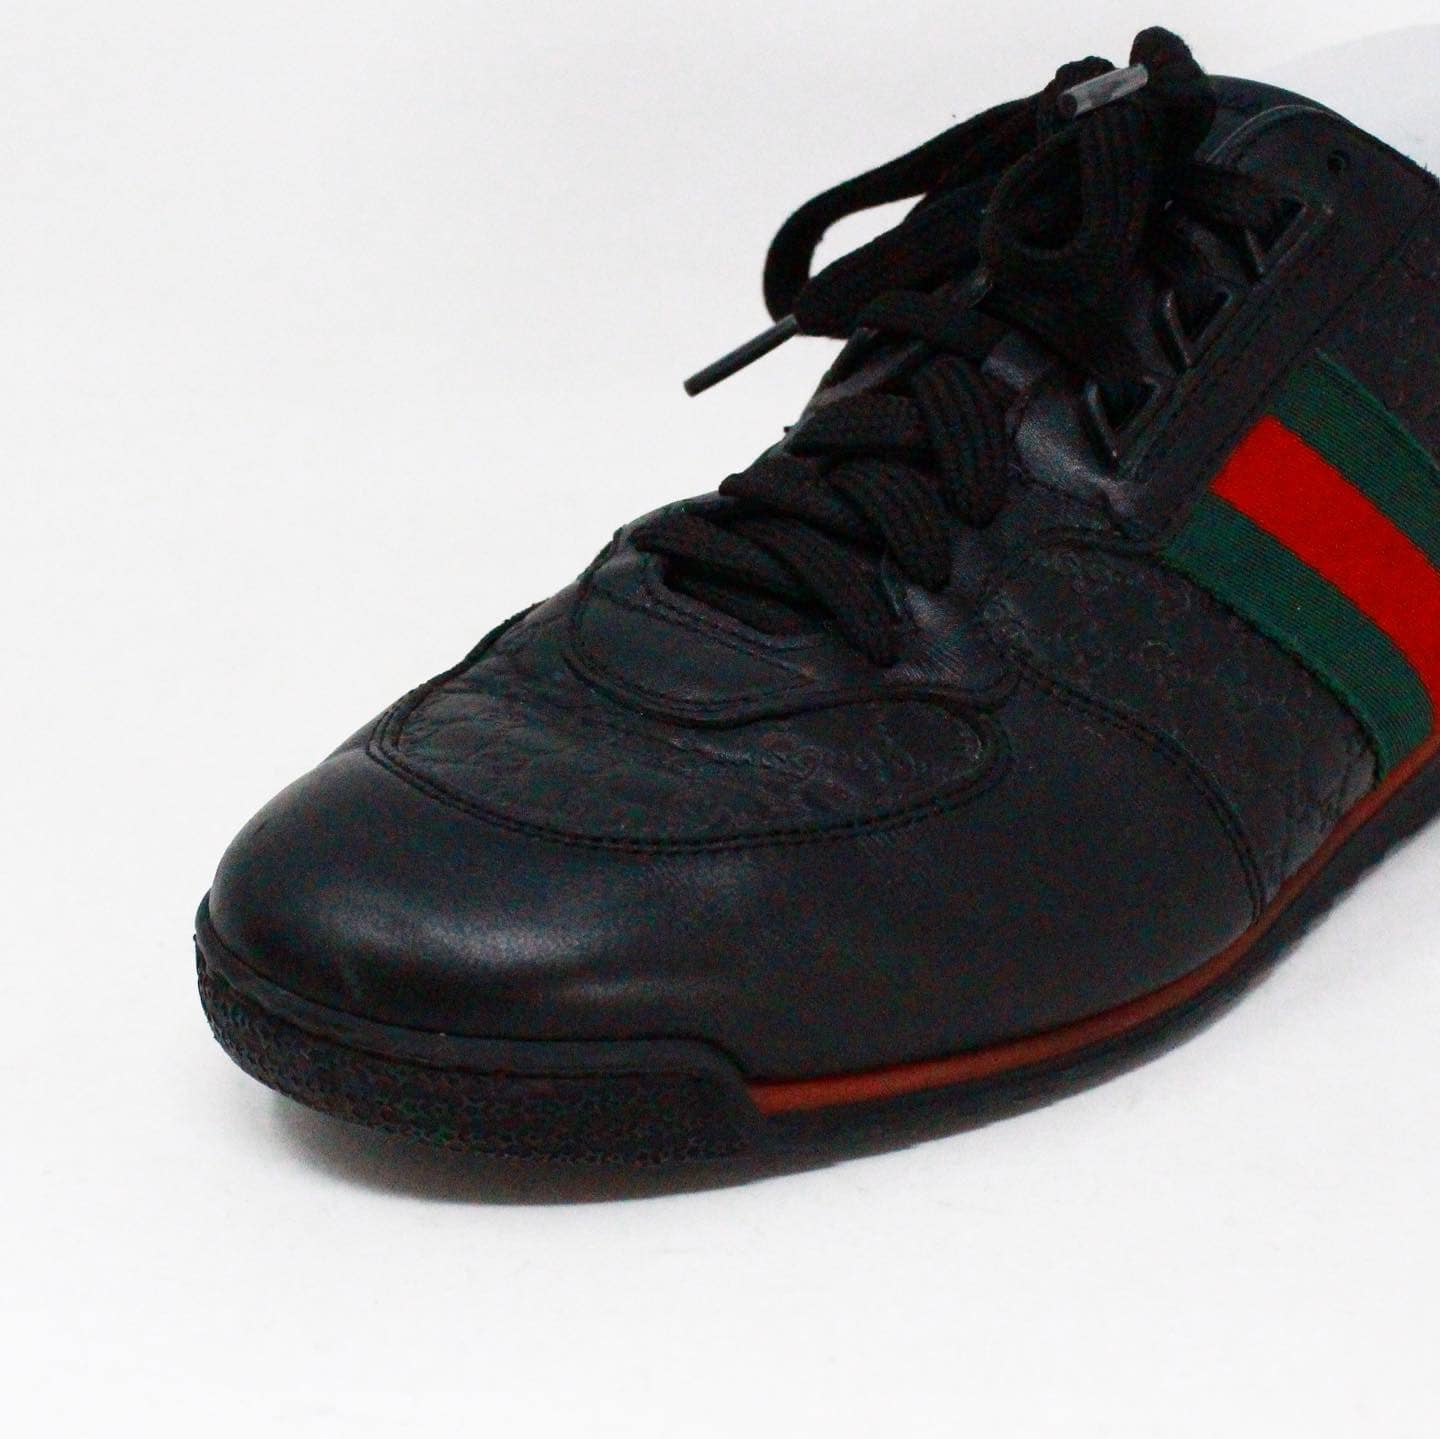 Gucci Micro Guccissima 233334 Men's Black Leather Web Sneakers Size - US 9.5